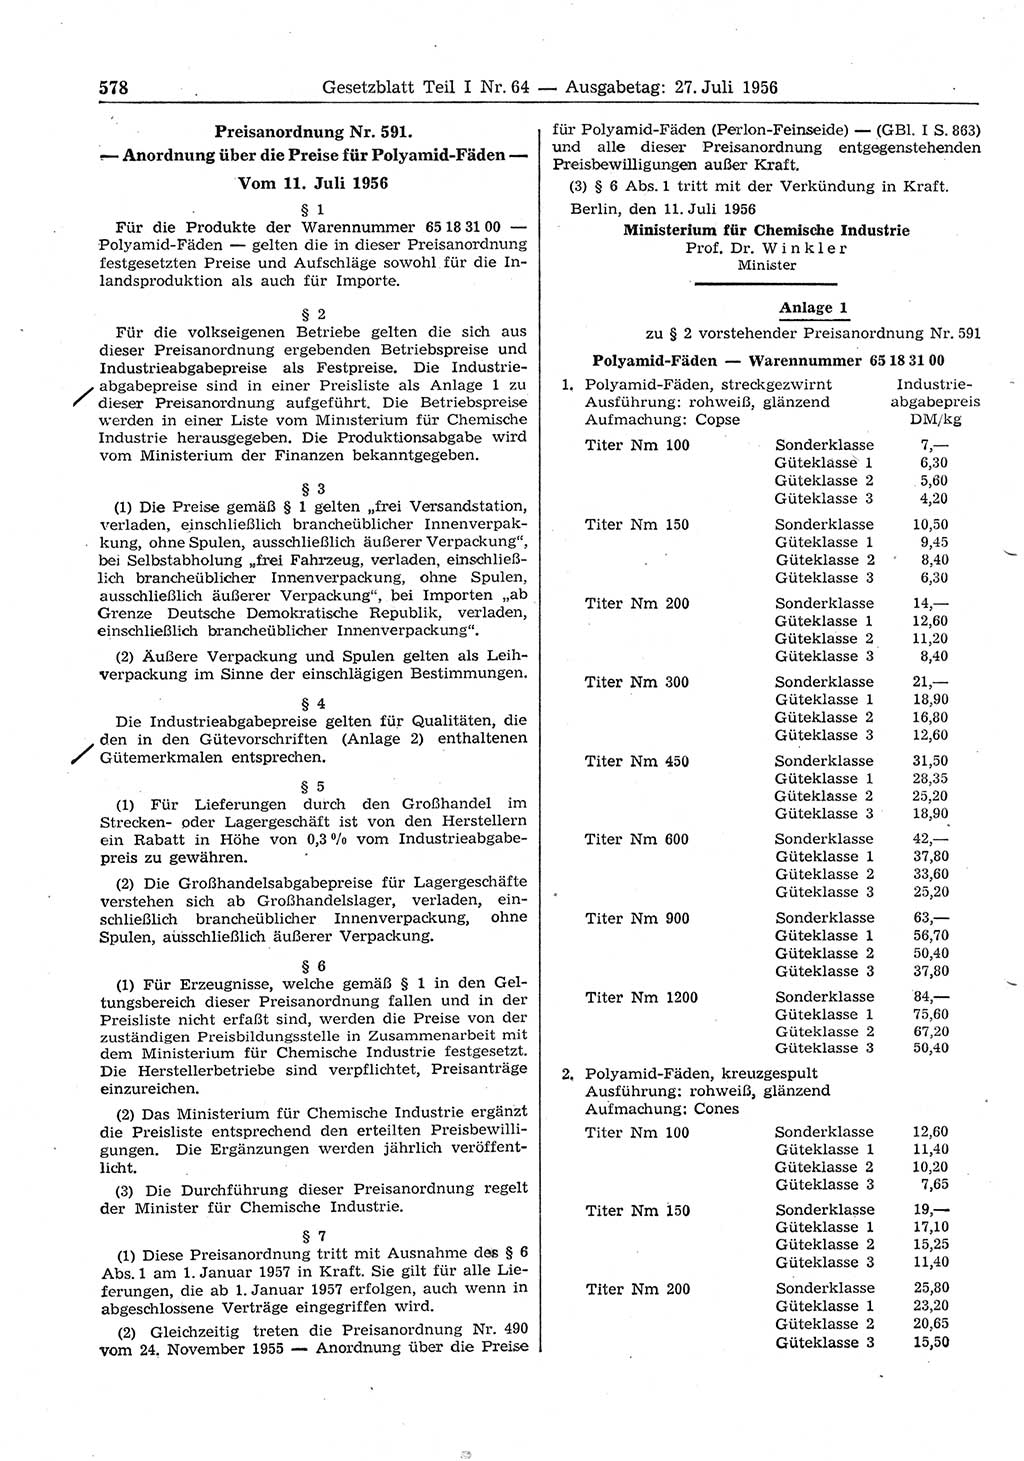 Gesetzblatt (GBl.) der Deutschen Demokratischen Republik (DDR) Teil Ⅰ 1956, Seite 578 (GBl. DDR Ⅰ 1956, S. 578)